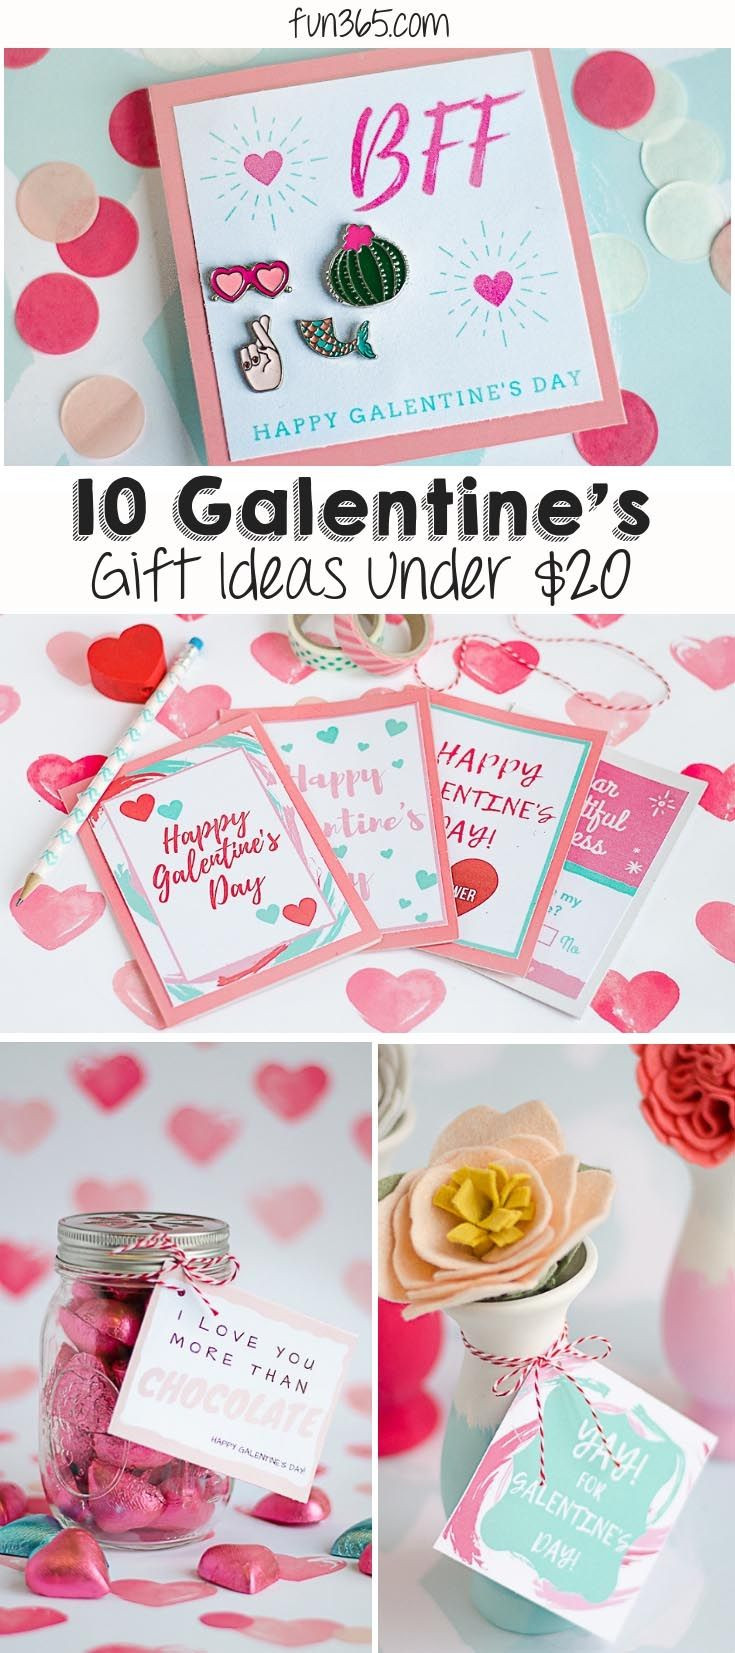 Valentine Gift Ideas Under $20
 10 Galentine s Gift Ideas Under $20